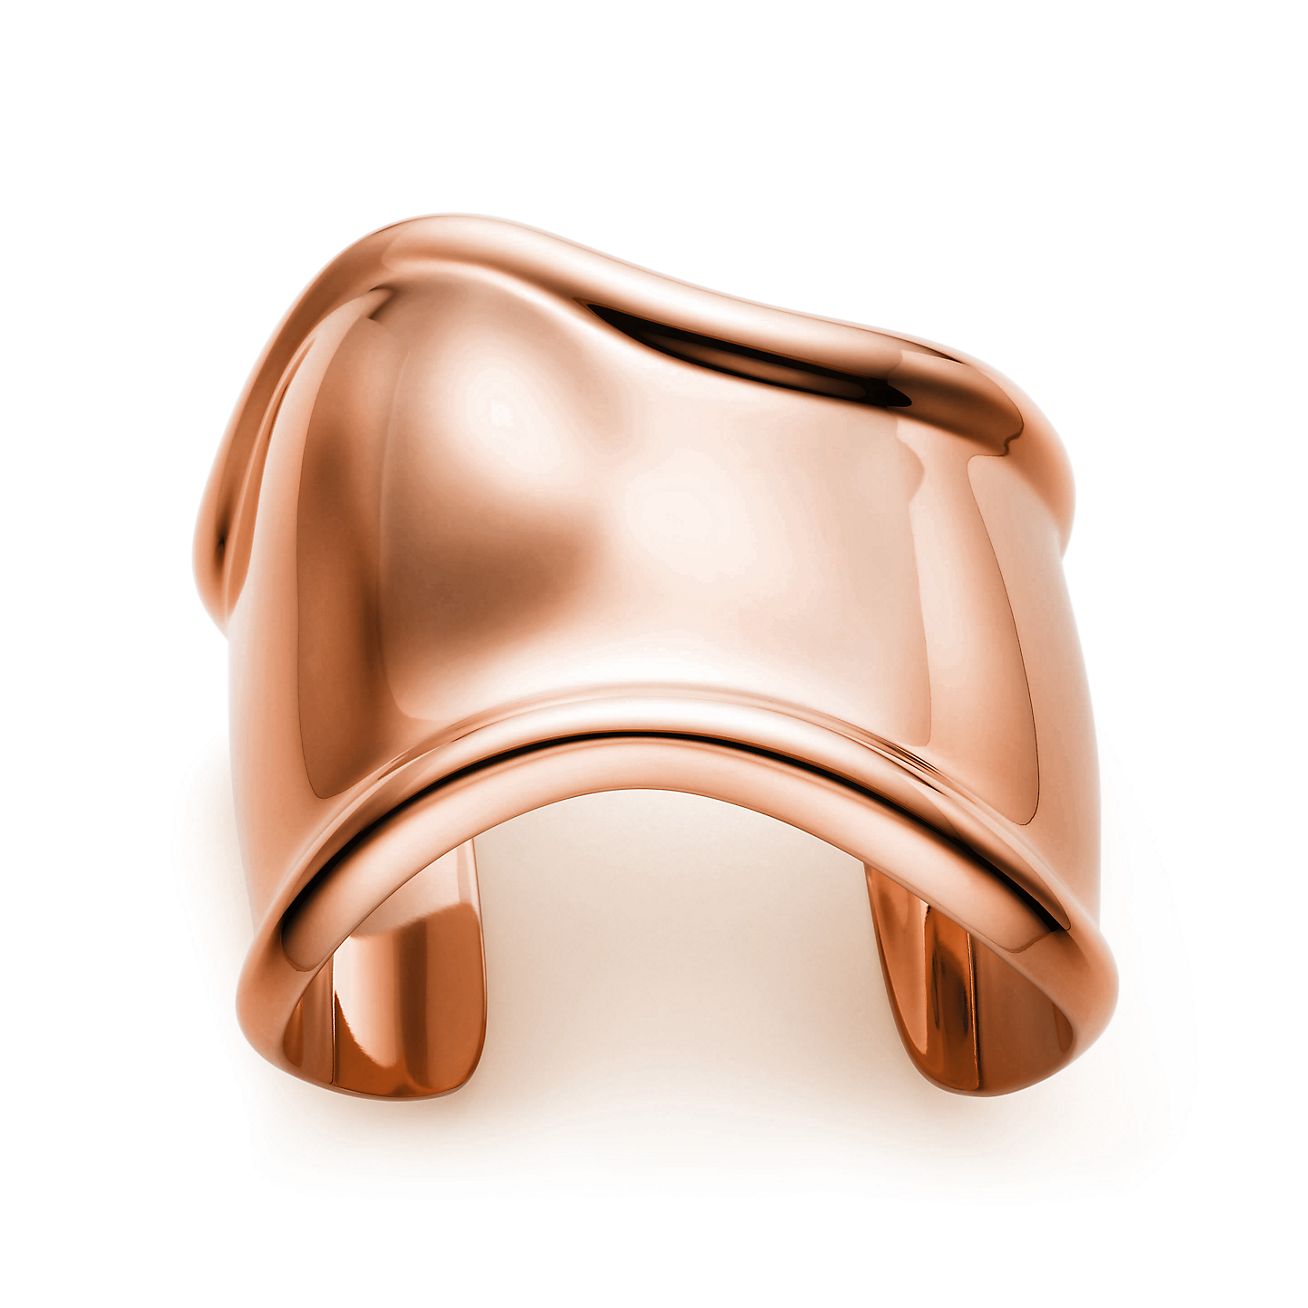 Elsa Peretti® medium Bone cuff in 18k rose gold, 61 mm wide